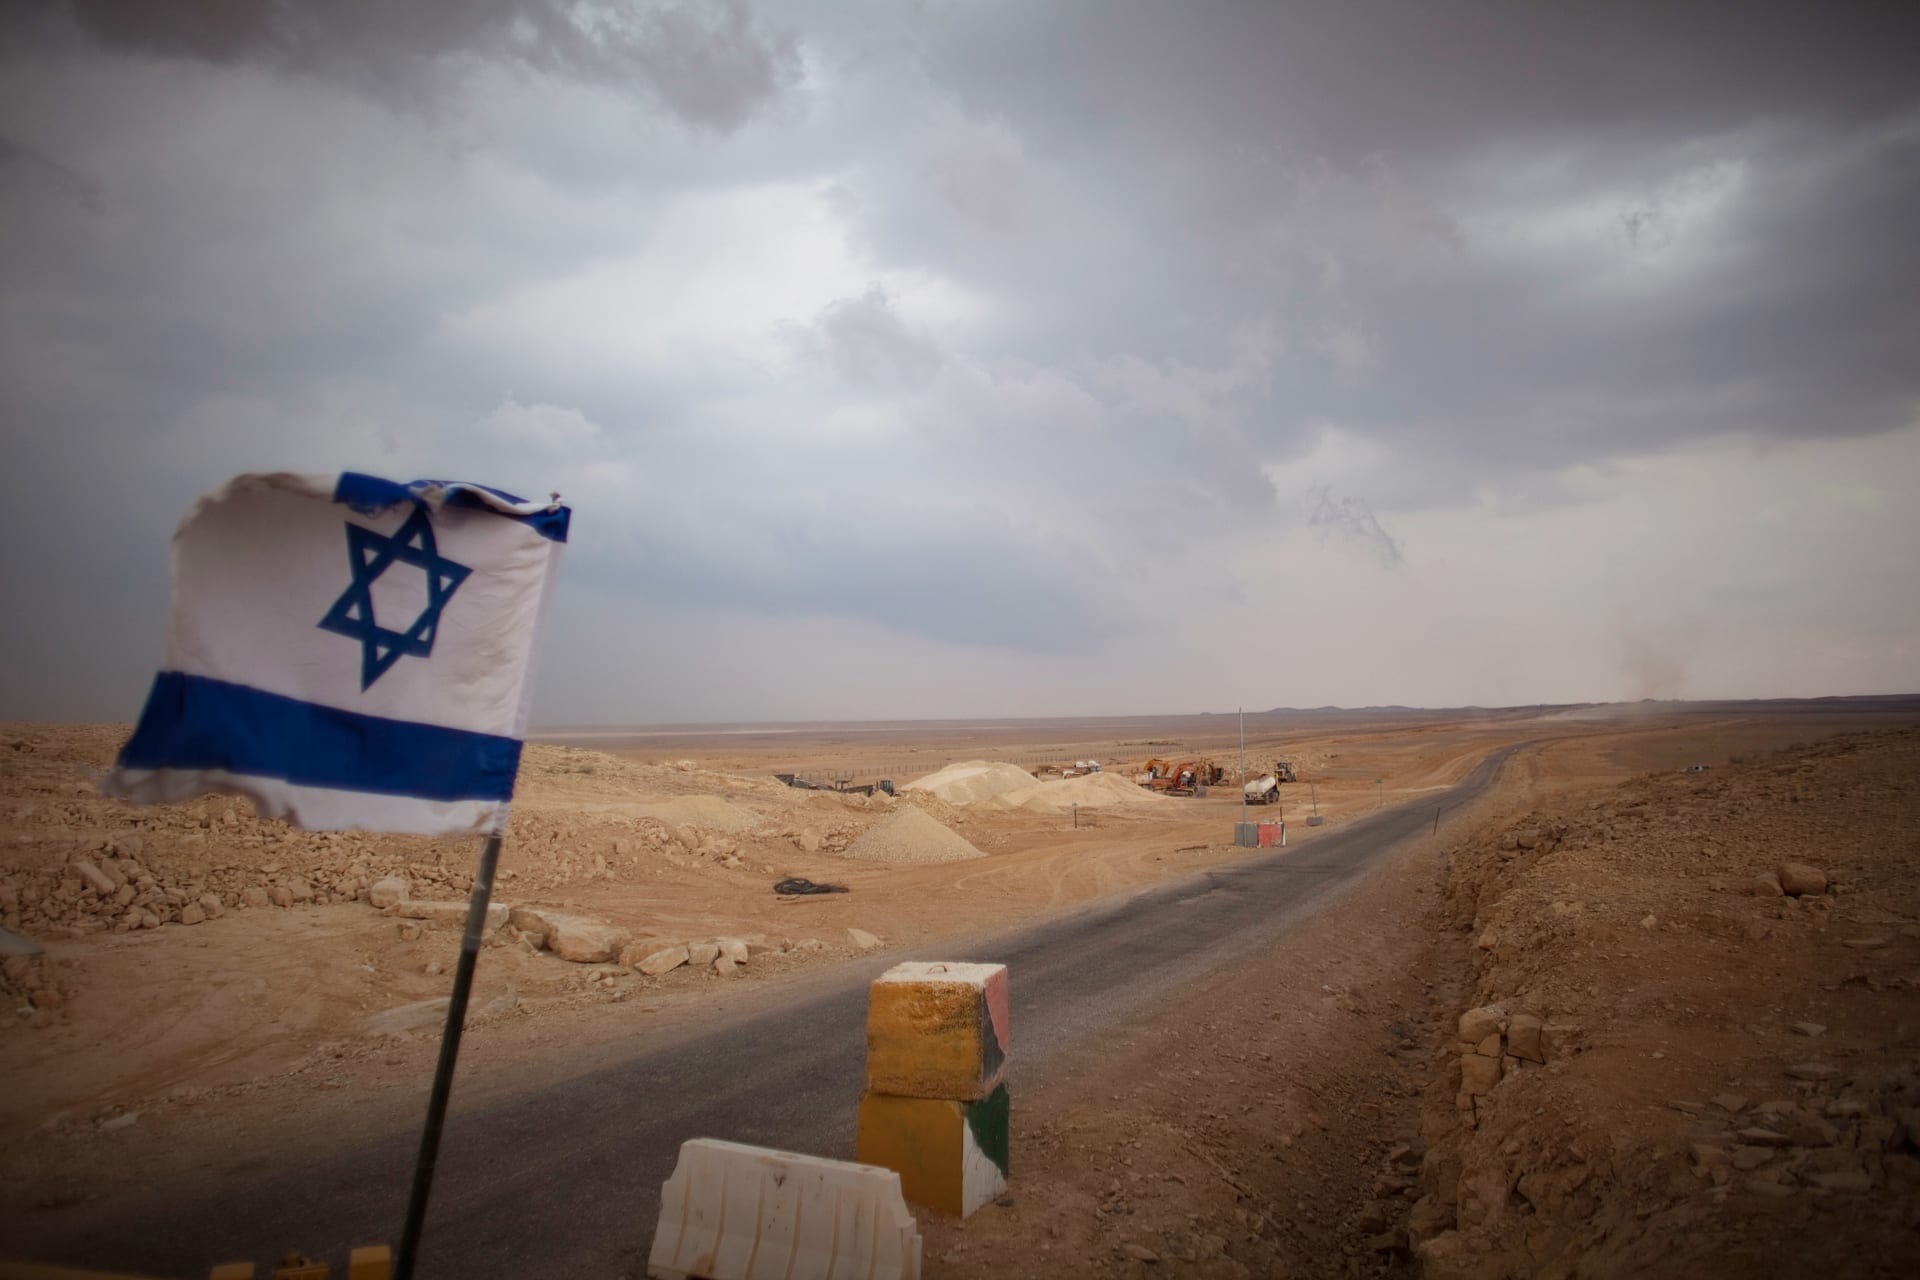 إعلامي إسرائيلي يثير تفاعلا بتدوينة "توطين الفلسطينيين في سيناء" وما هو المقابل